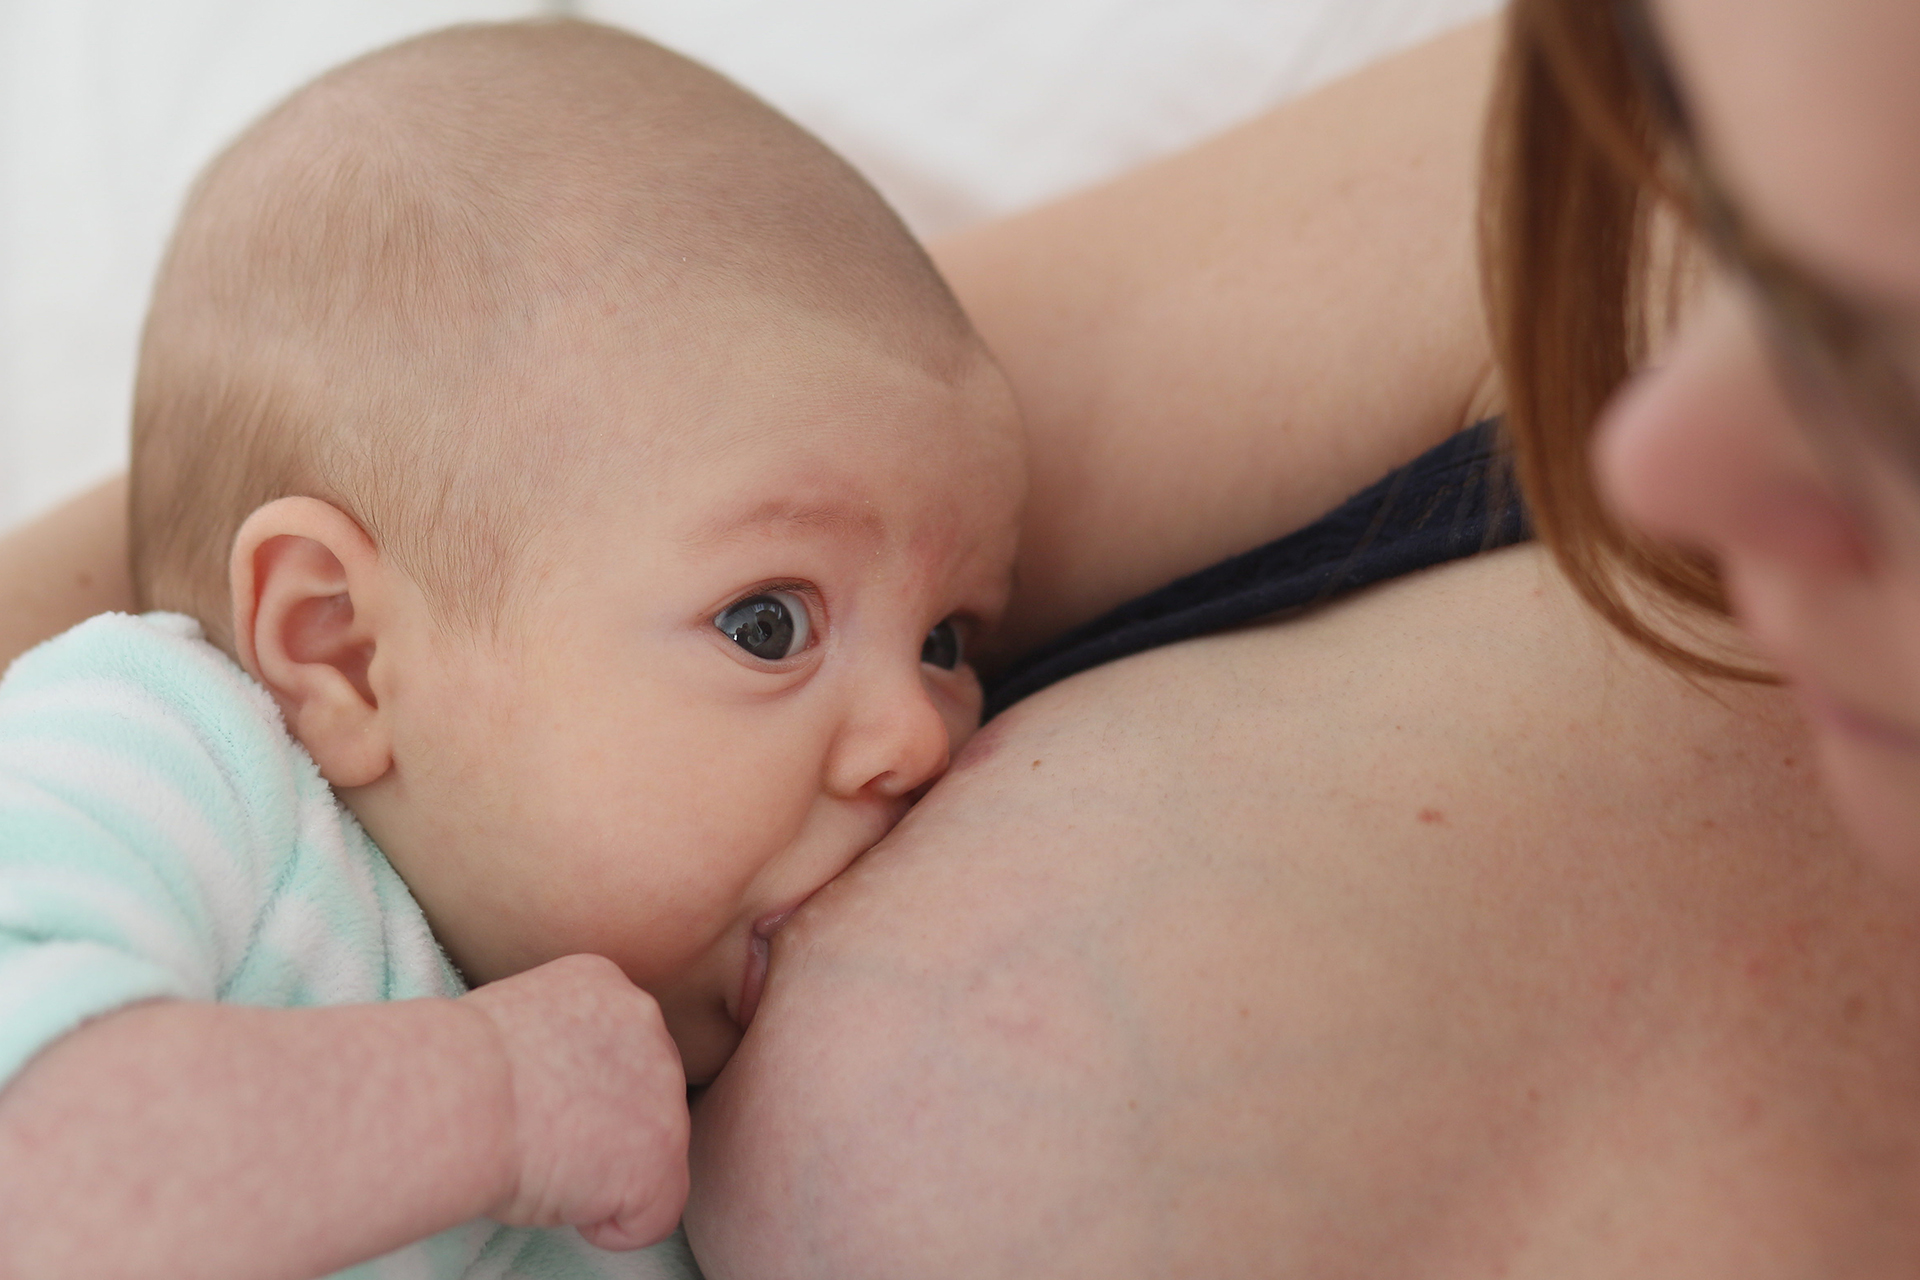 Aquellos bebes que fueron alimentados con leche materna suelen mostrar una menor resistencia a aceptar una alimentación variada / (Photo by Tim Clayton/Corbis via Getty Images)